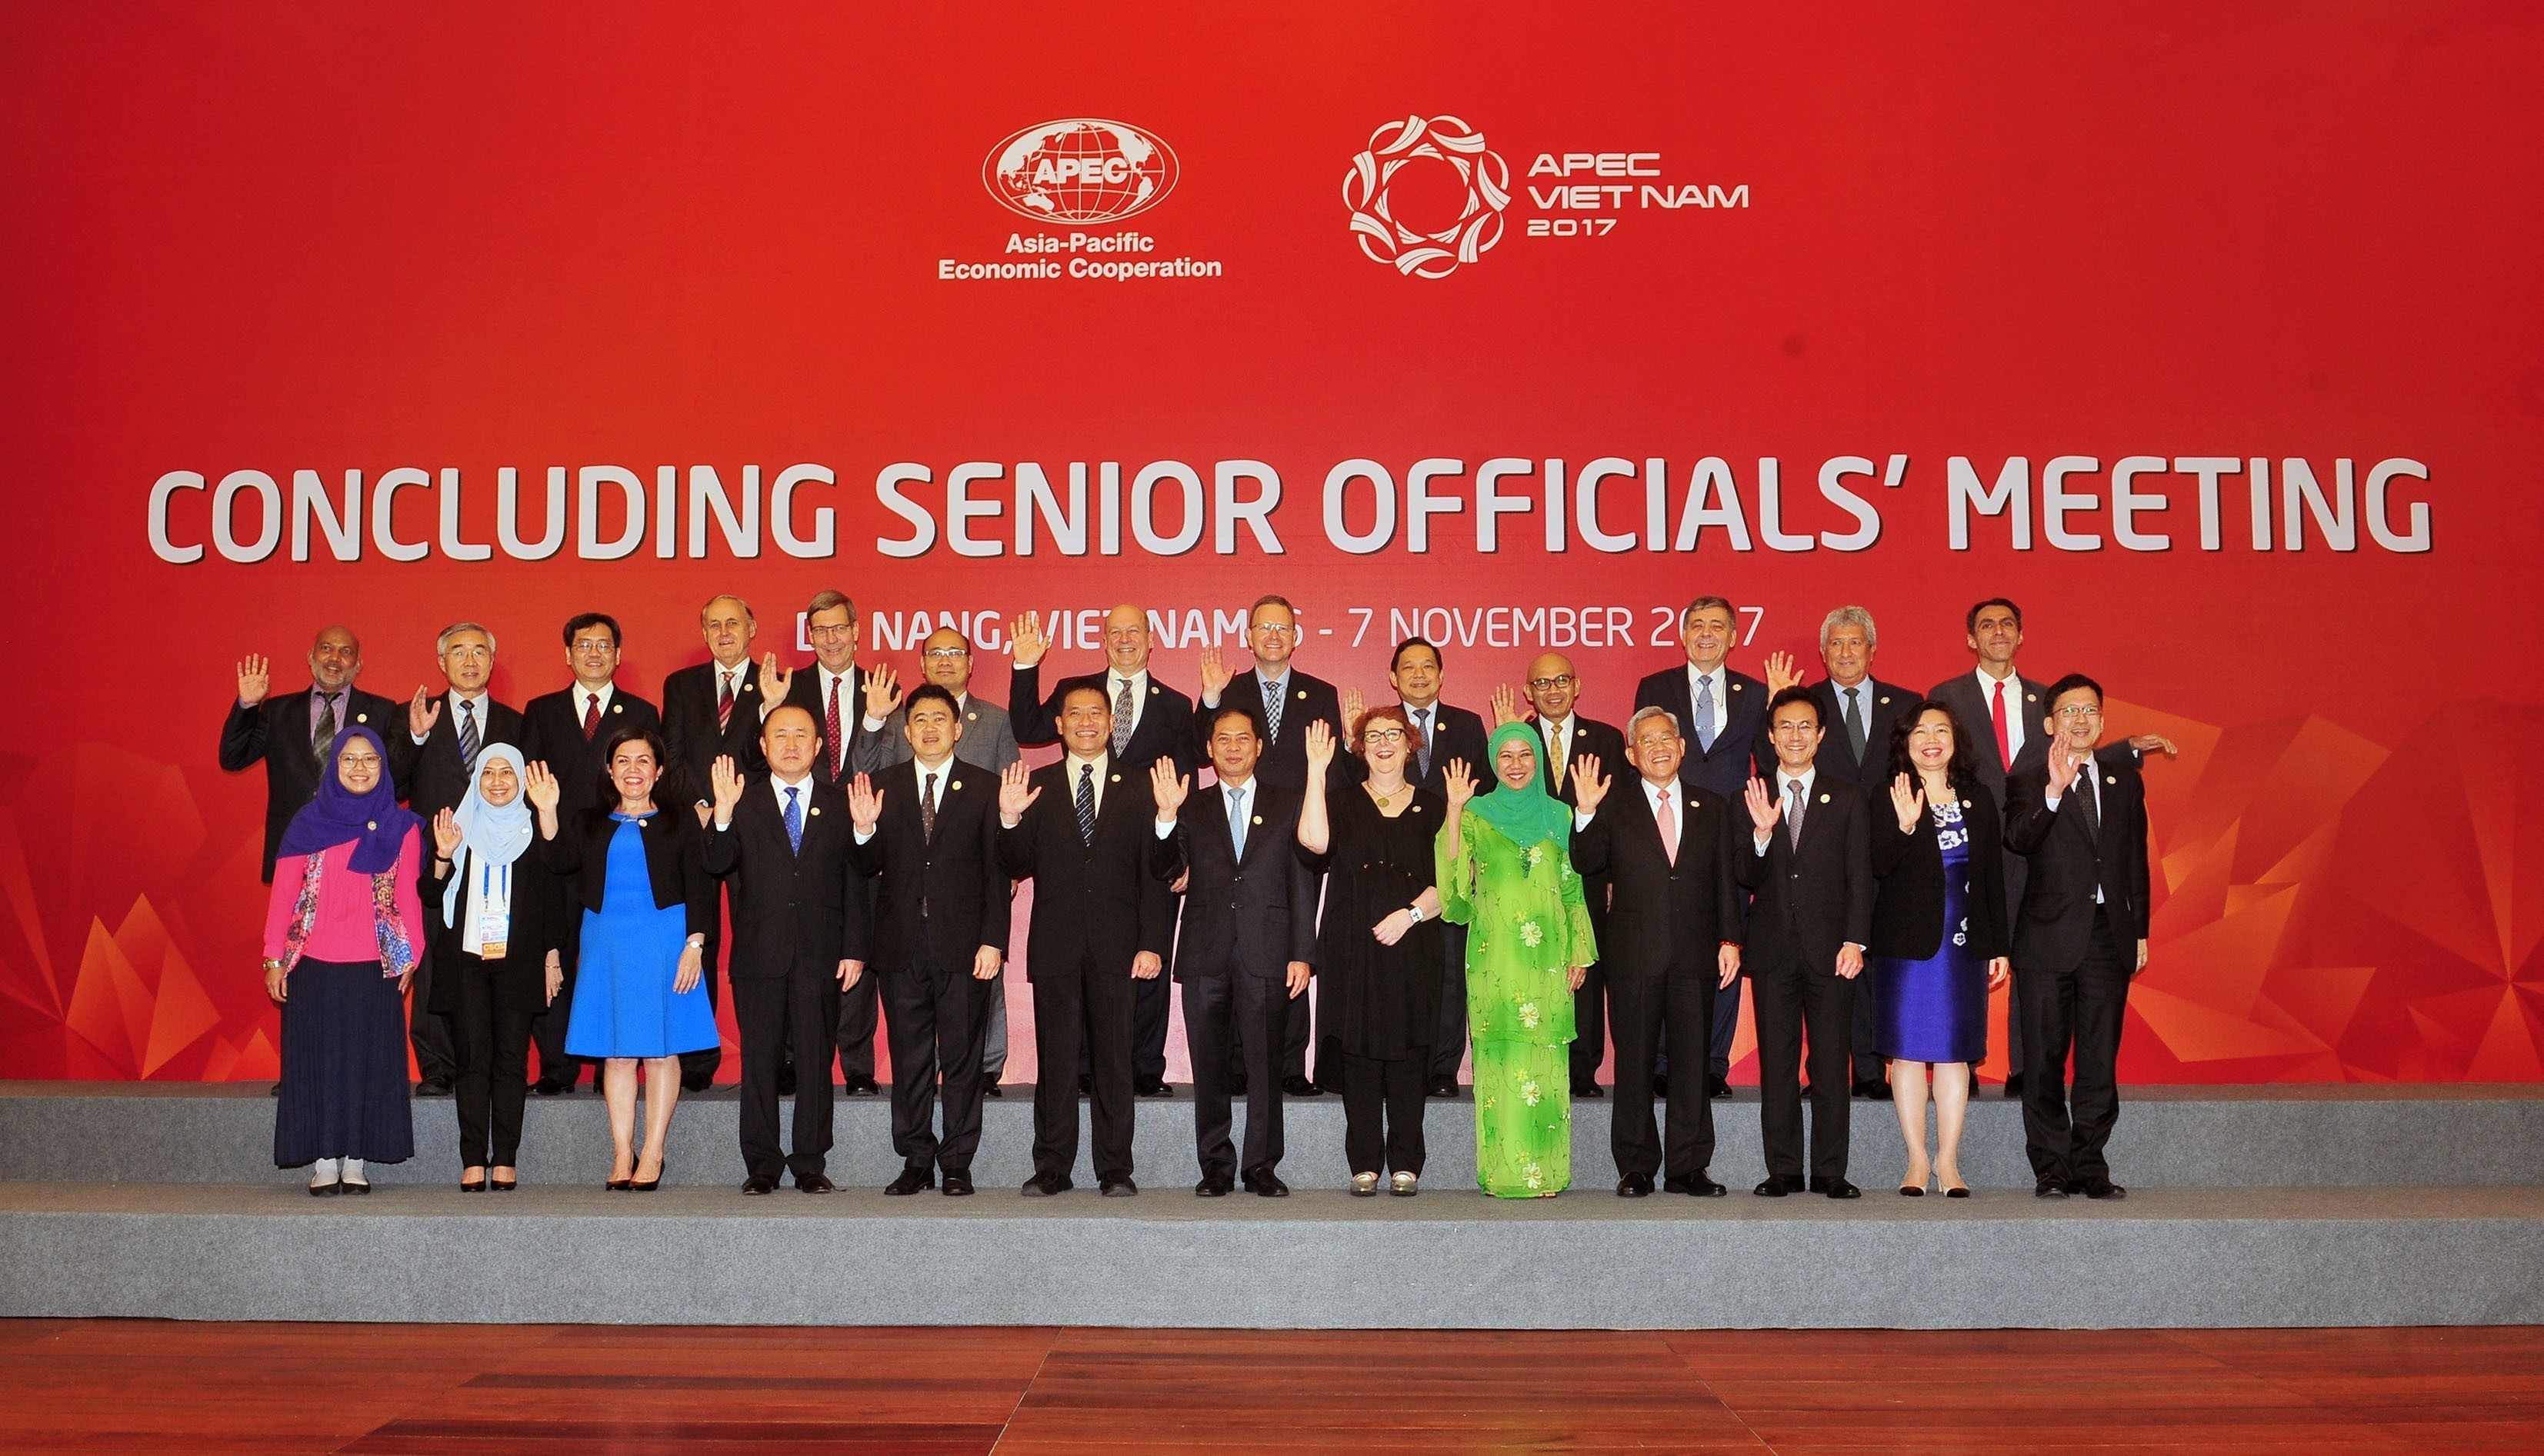 Hội nghị tổng kết các quan chức cao cấp APEC (CSOM) đã bế mạc vào trưa ngày hôm qua.